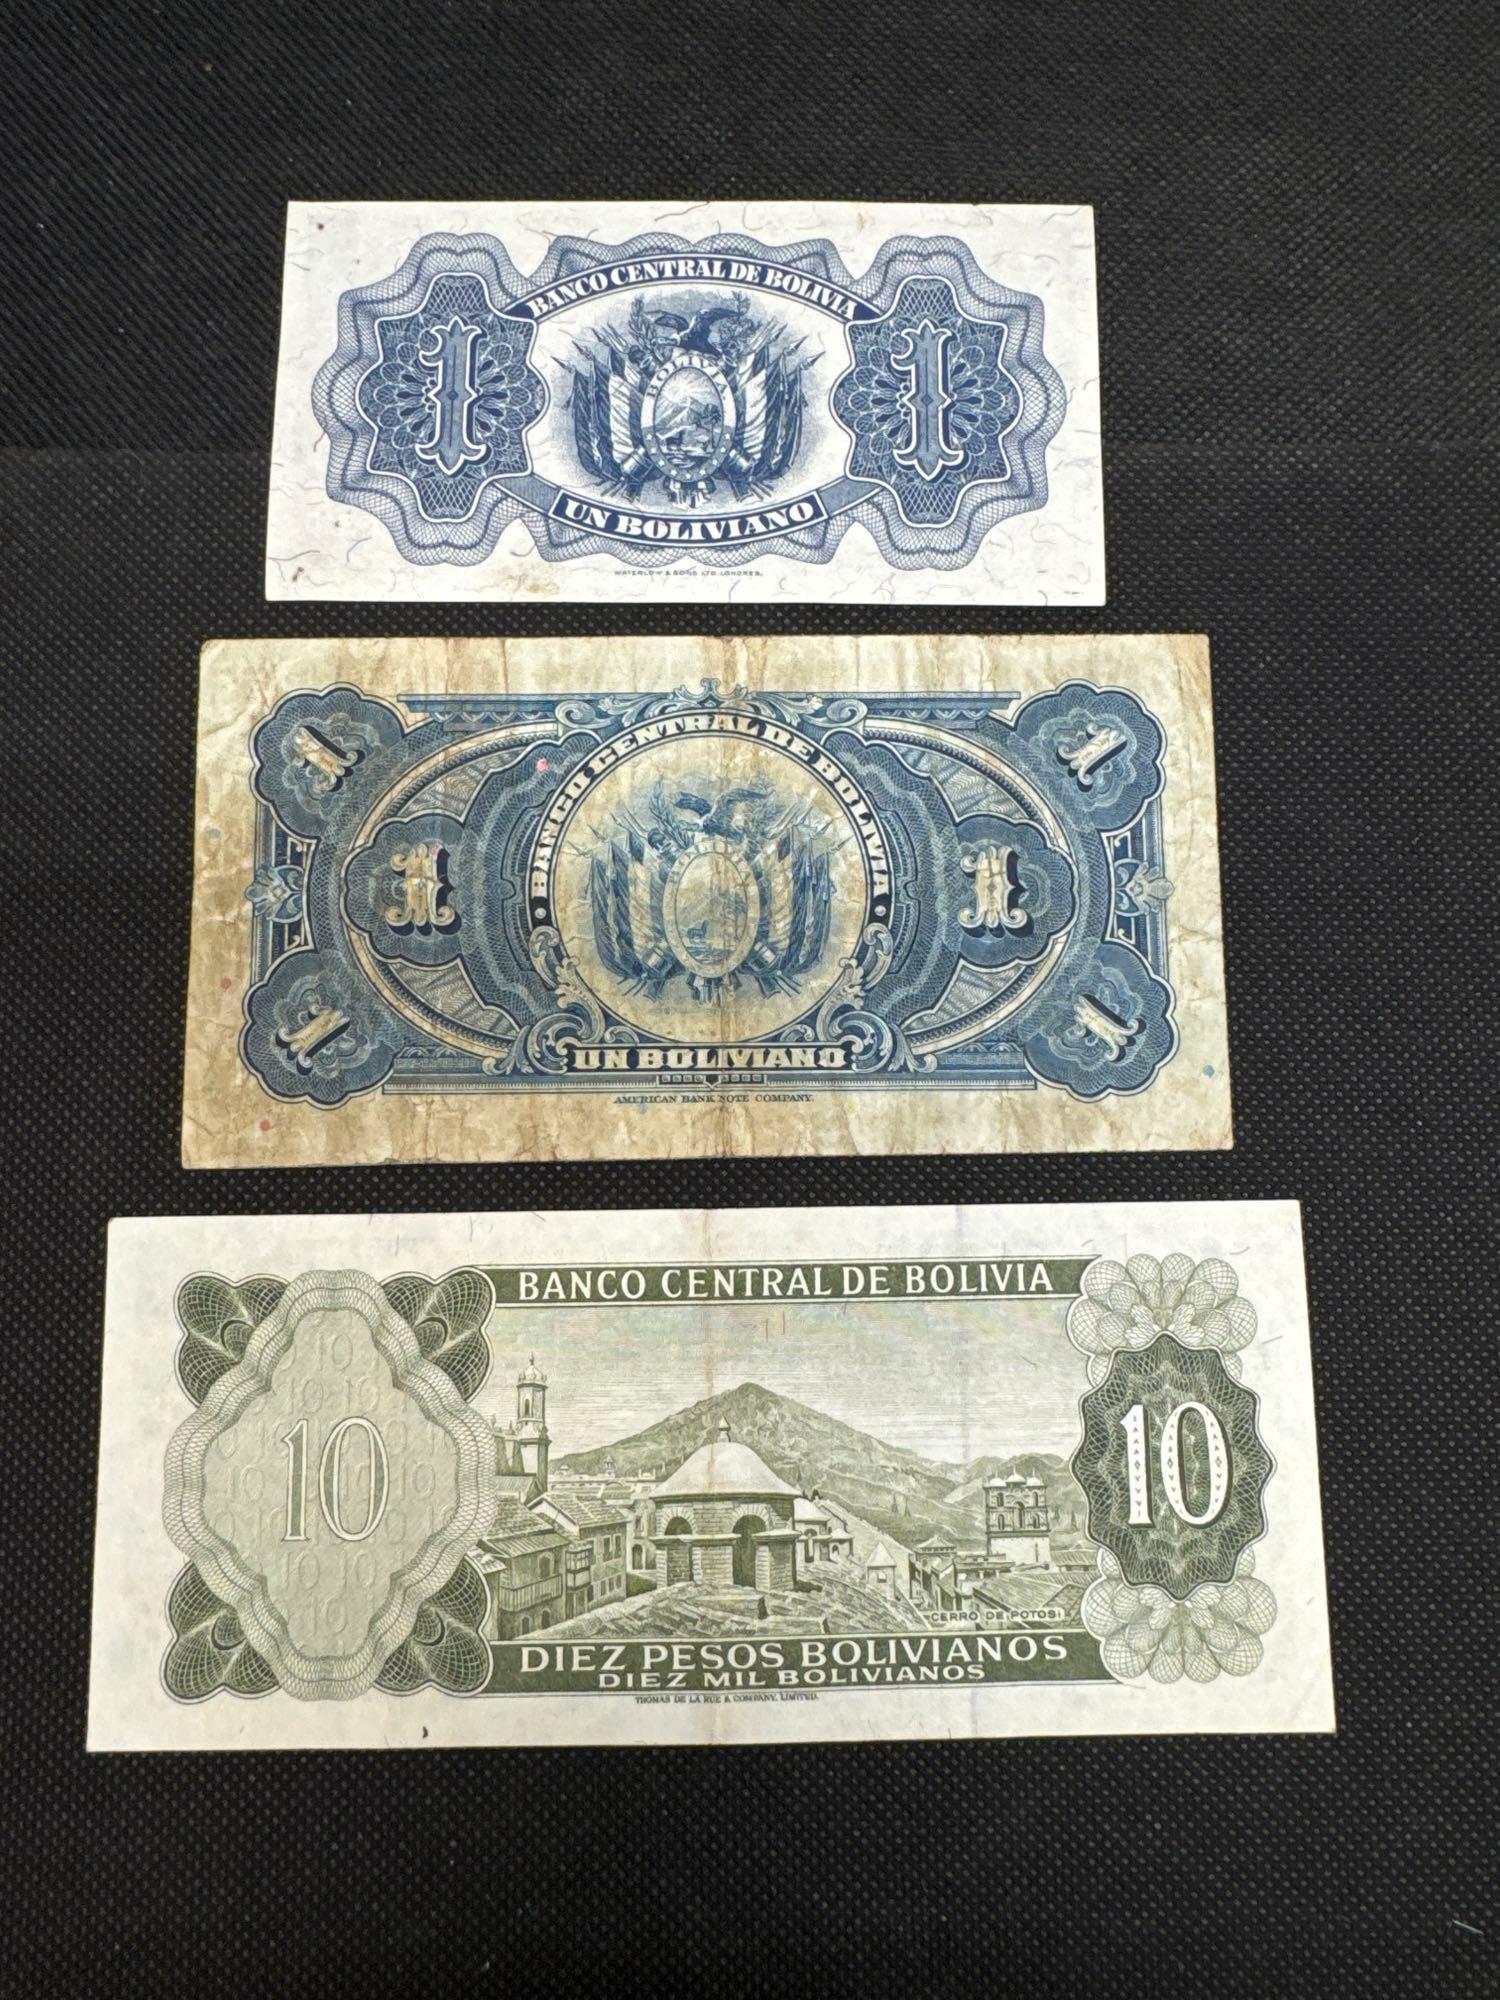 Bolivia Banknotes